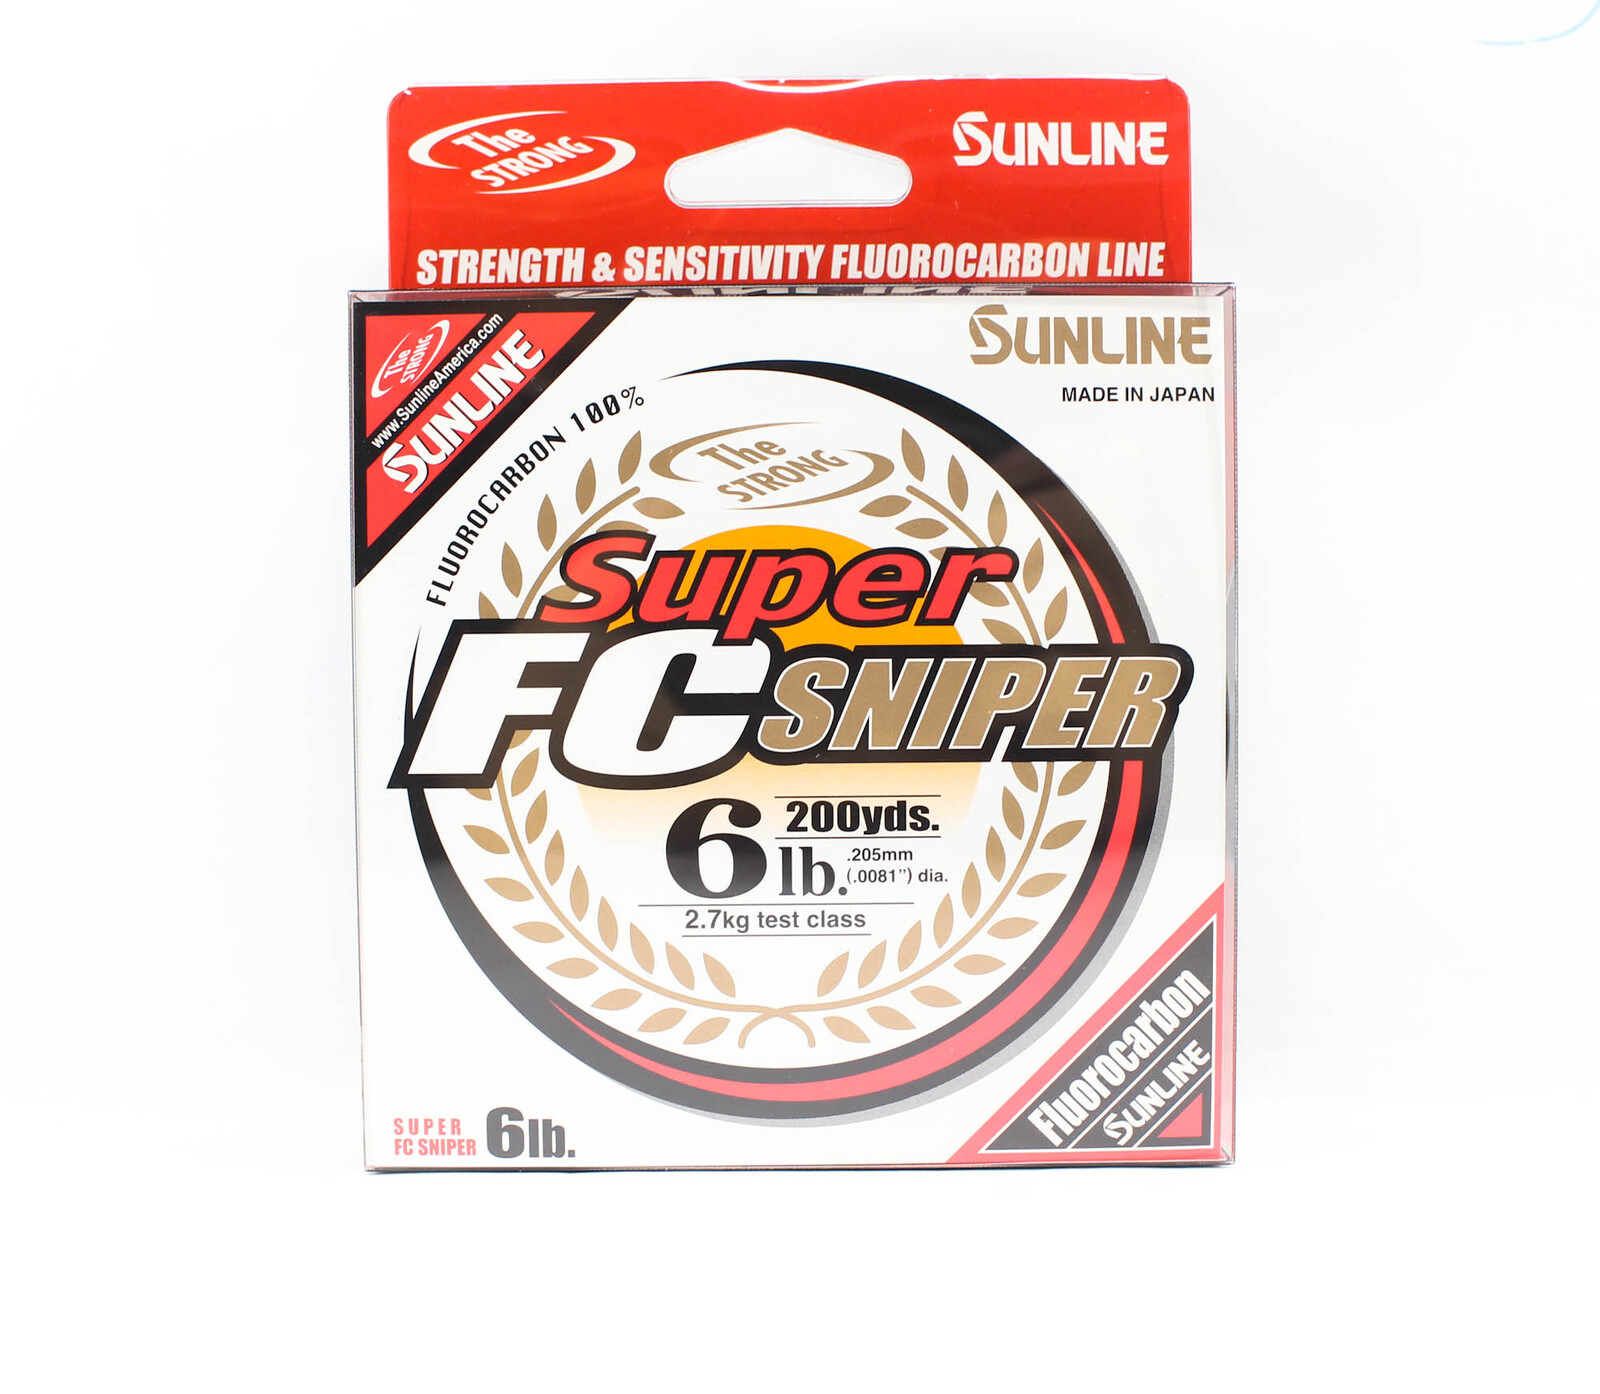 Sunline Super FC Sniper 100% Fluorocarbon Fishing Line 200 yds #6lb